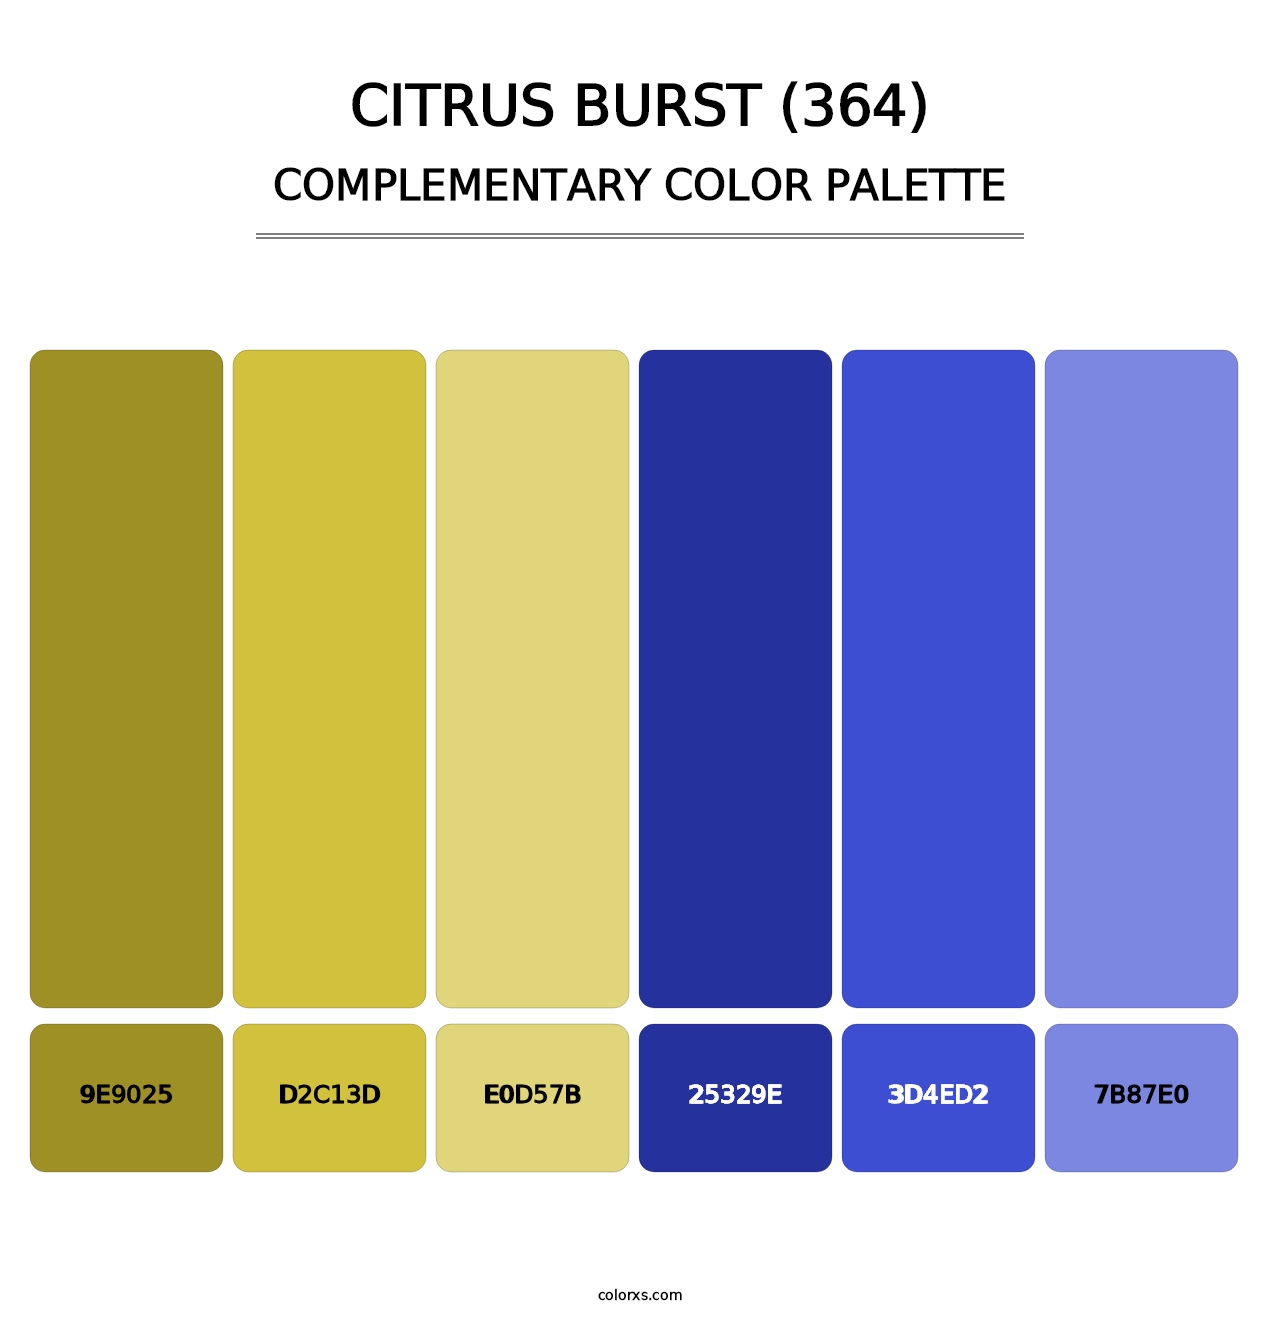 Citrus Burst (364) - Complementary Color Palette